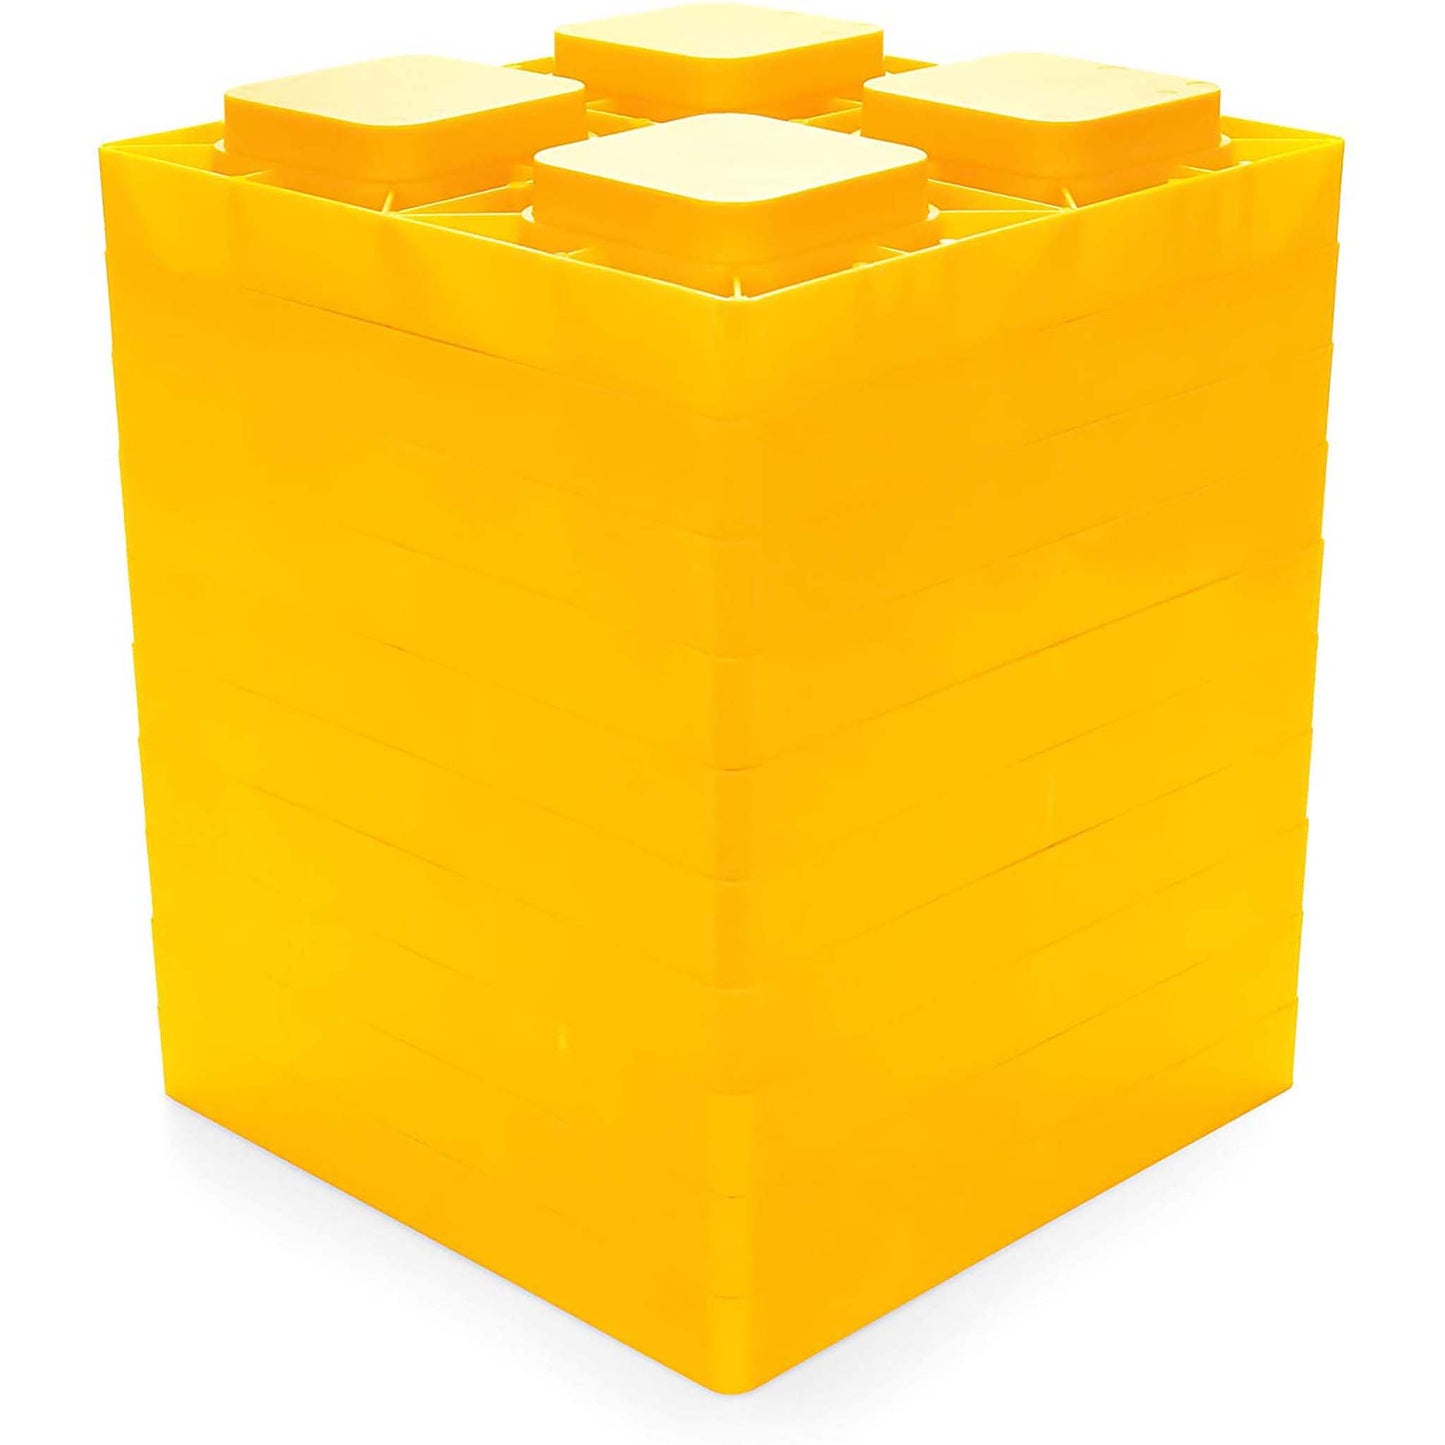 Leveling Blocks - 10 pack